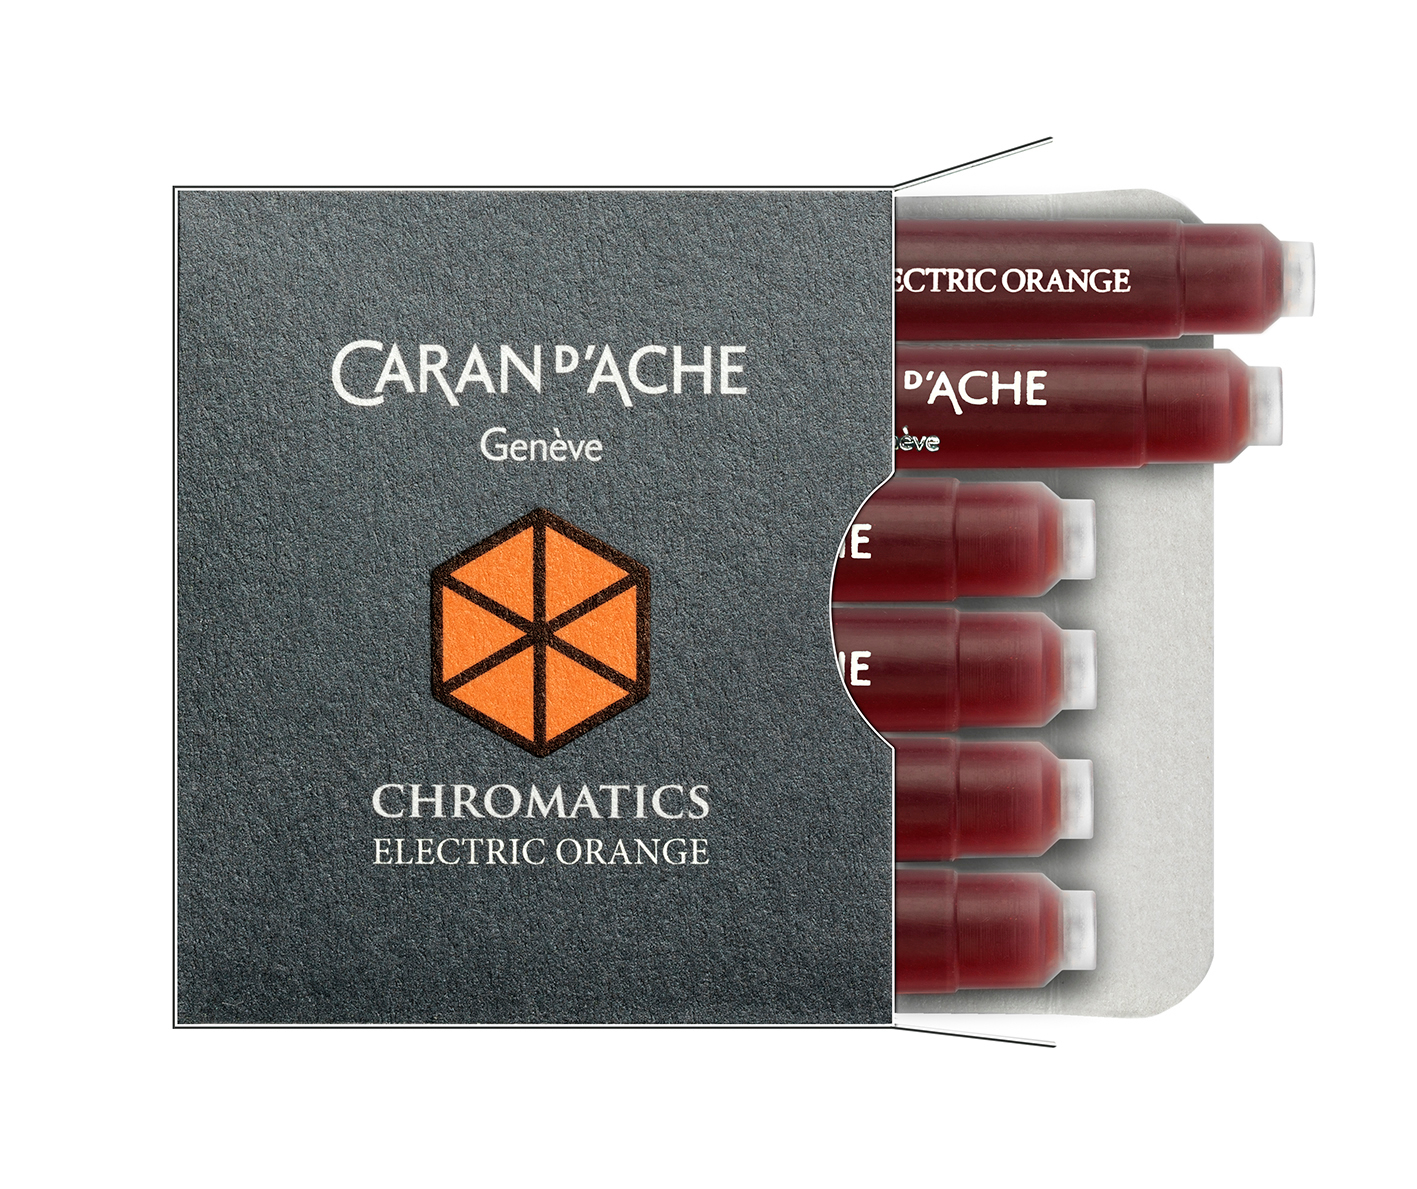 CARAN D'ACHE Cartouche d'encre 8021.052 Electric Orange 6 pcs.